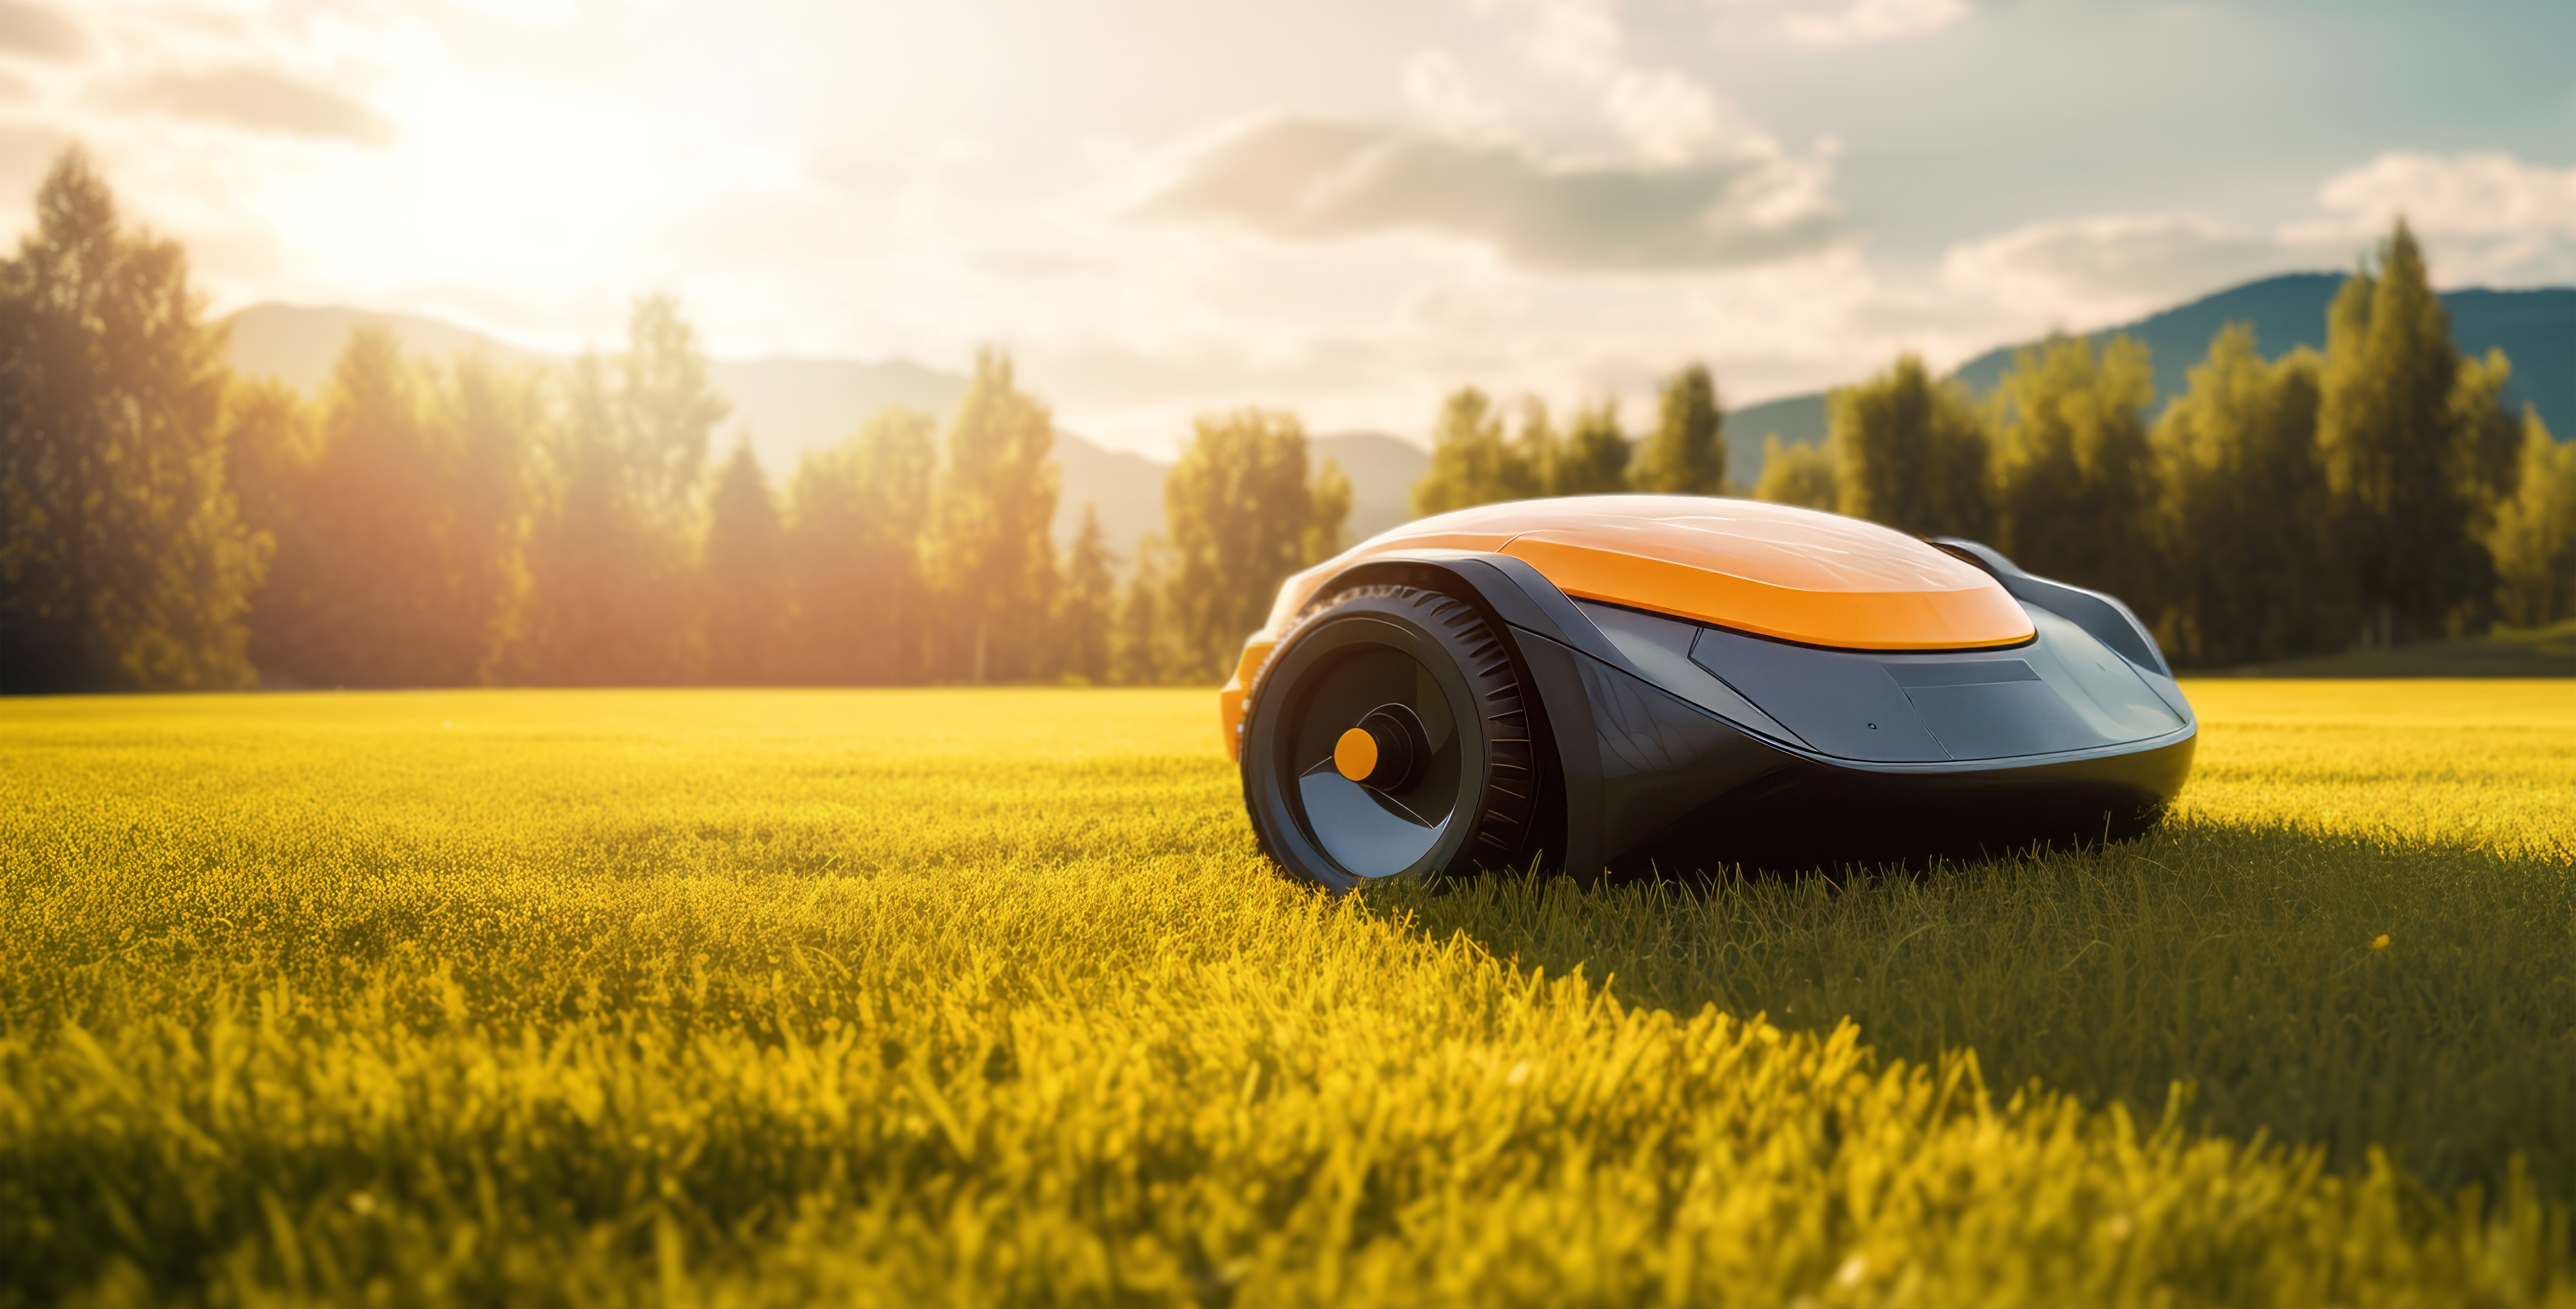 Le robot tondeuse à gazon Yard Force SA900ECO peut couvrir jusqu'à 900 m² de pelouse © ronstik, Adobe Stock